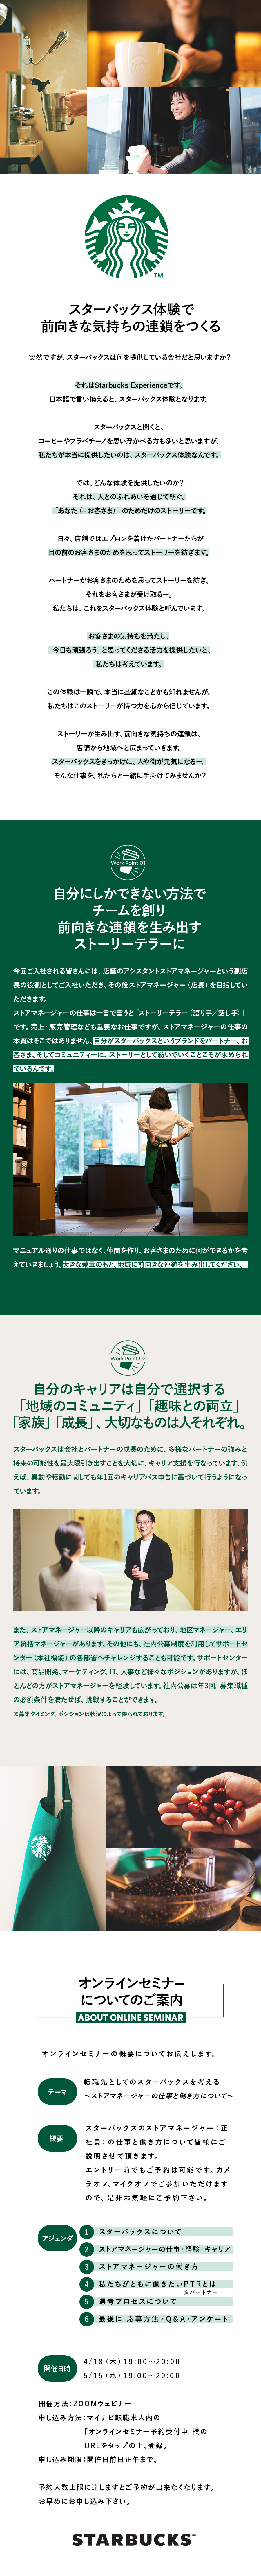 スターバックス コーヒー ジャパン 株式会社からのメッセージ